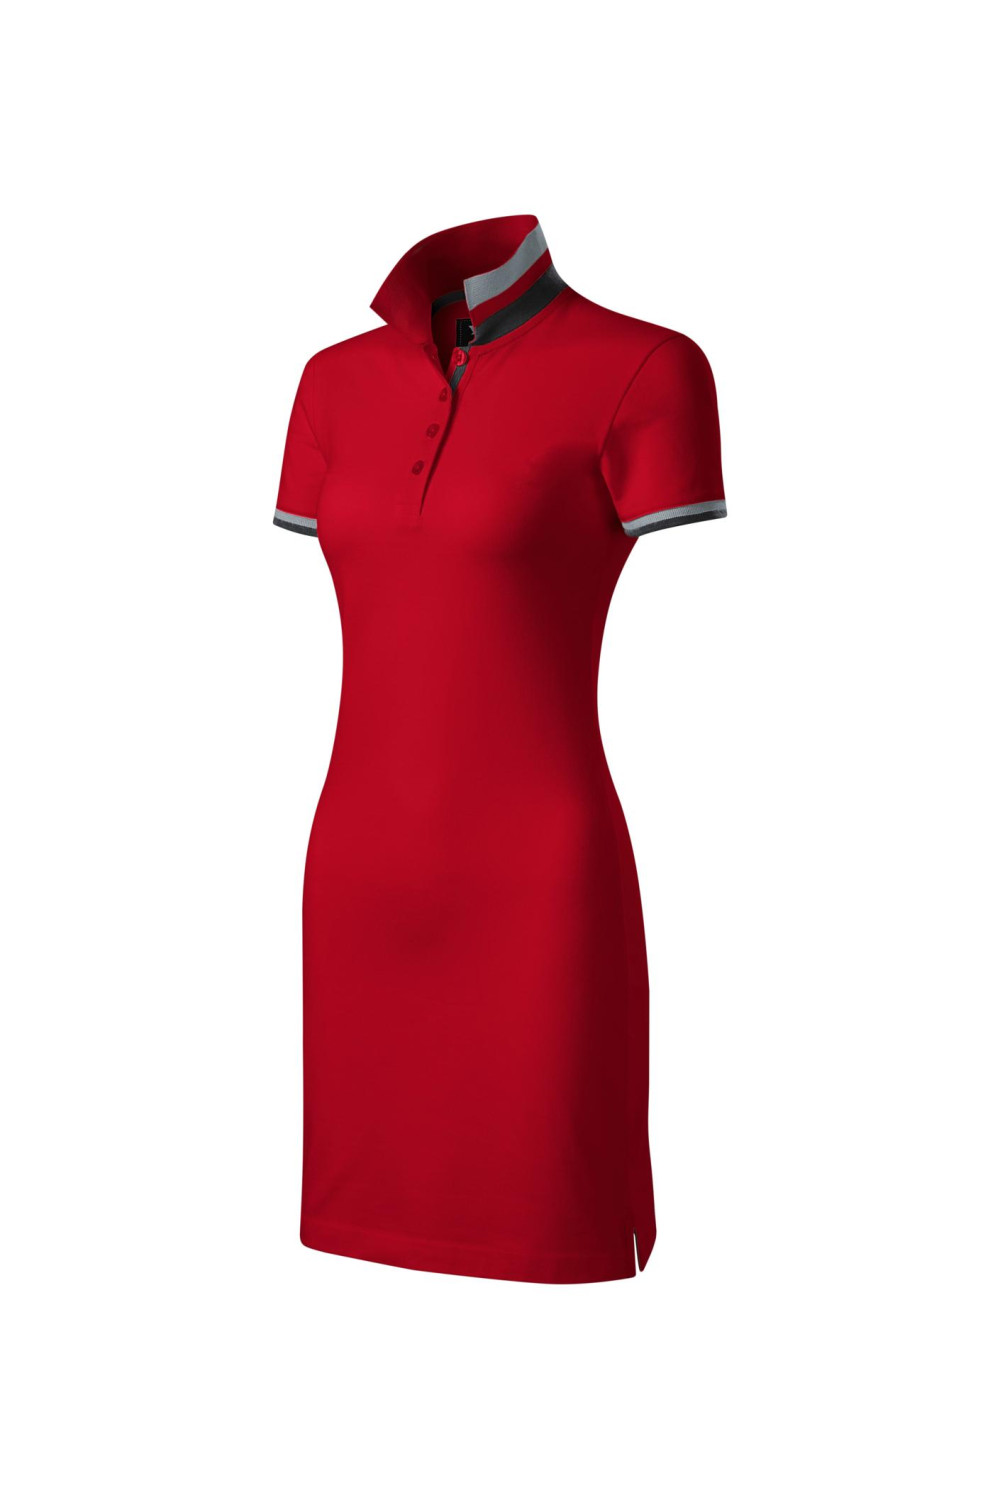 DRESS UP 271 MALFINI Sukienka damska z kołnierzykiem sportowa bawełna 100% czerwony